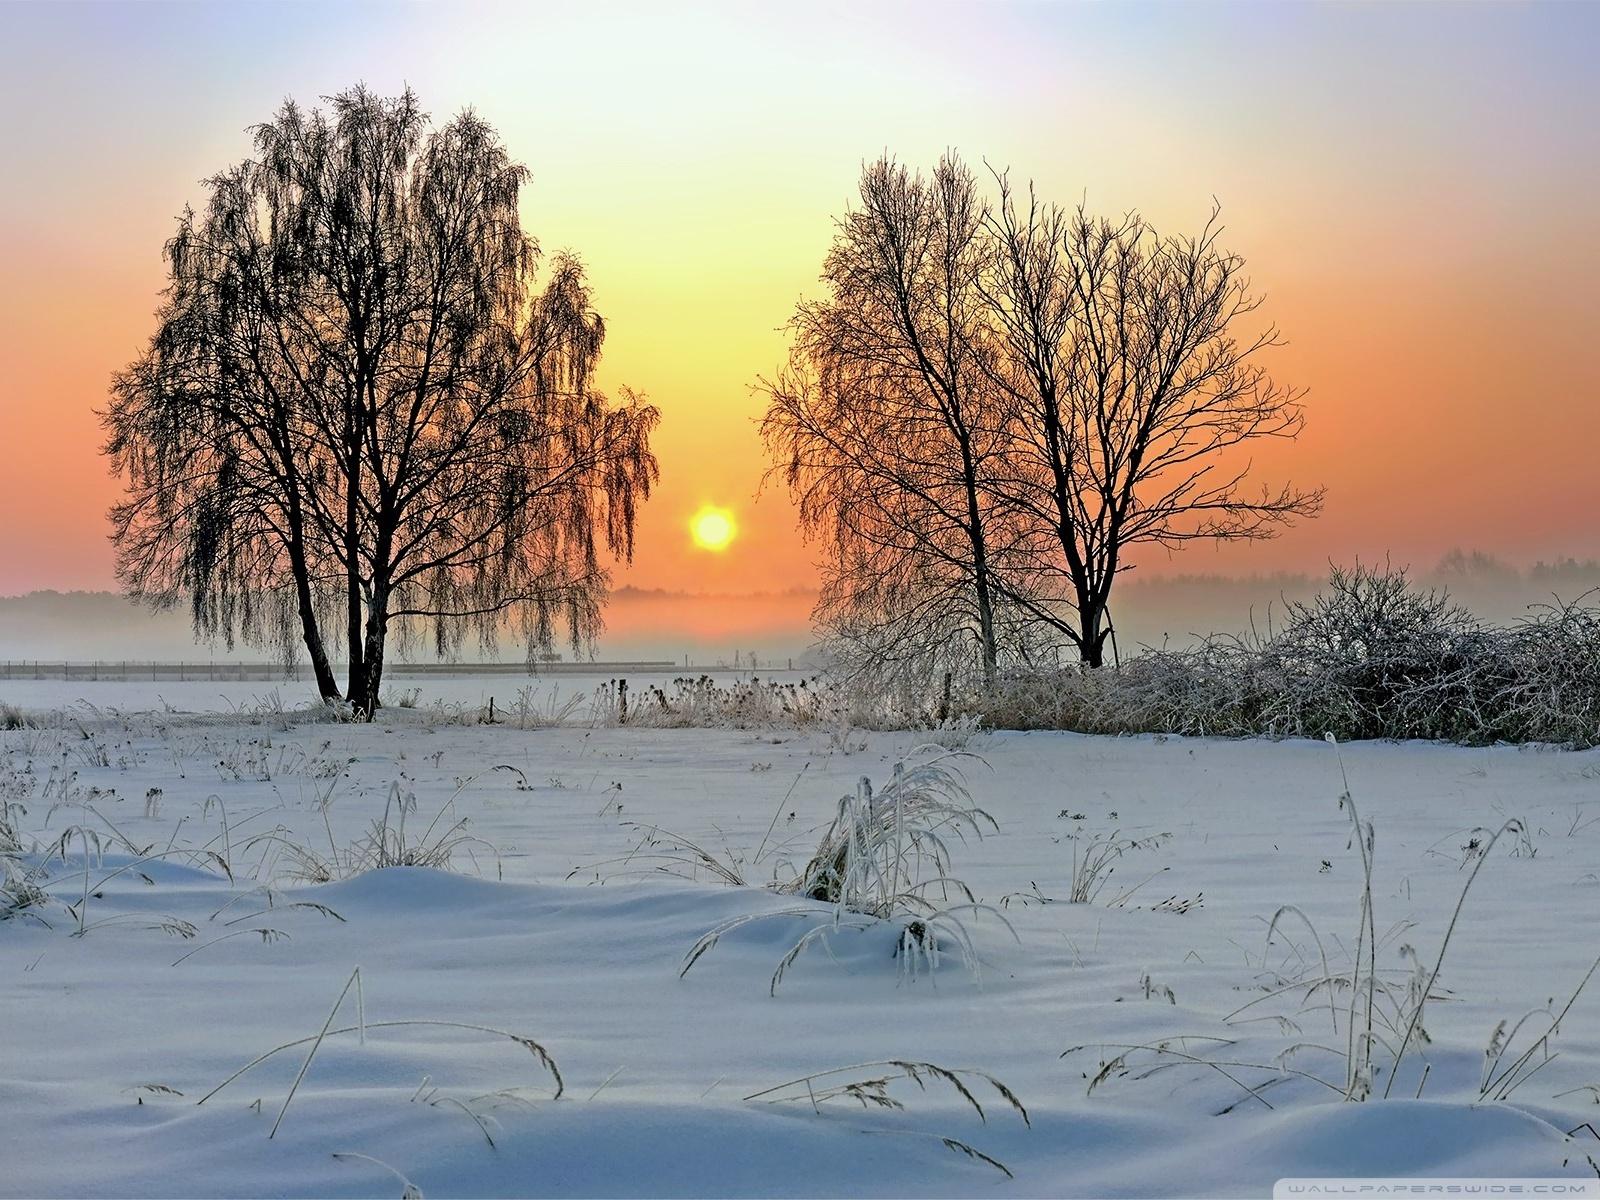 Tapety 11 Mobogenie - Winter Sunrise wallpaper.jpg